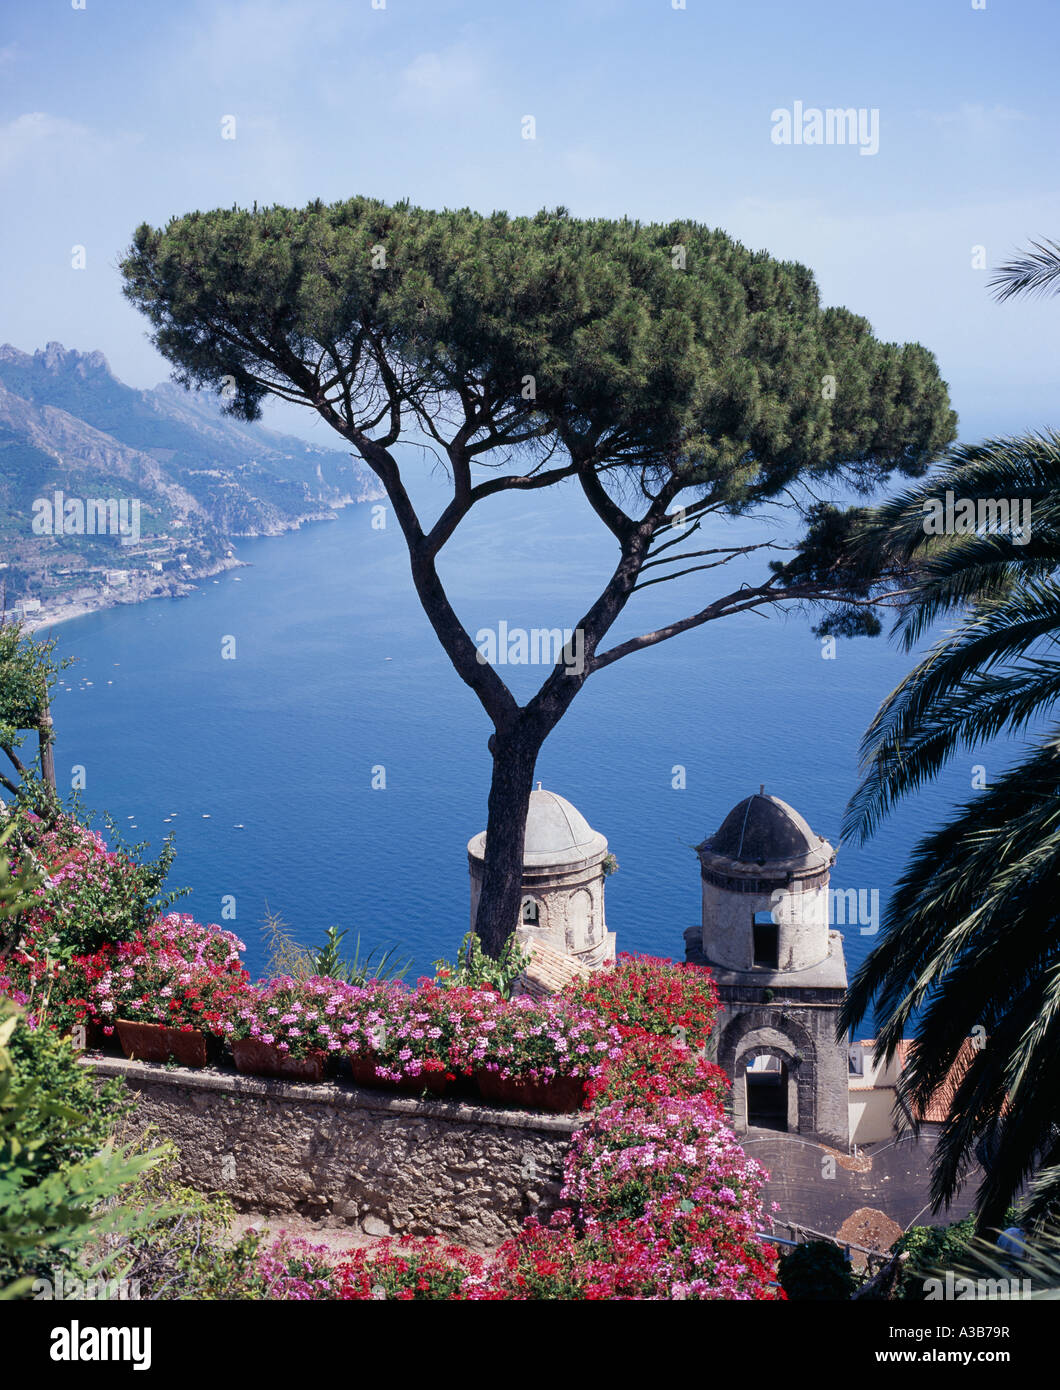 Italia Costiera Amalfitana Campania Ravello Villa Rufolo vista dal giardino sulla baia verso Maiori Salerno con albero in primo piano Foto Stock